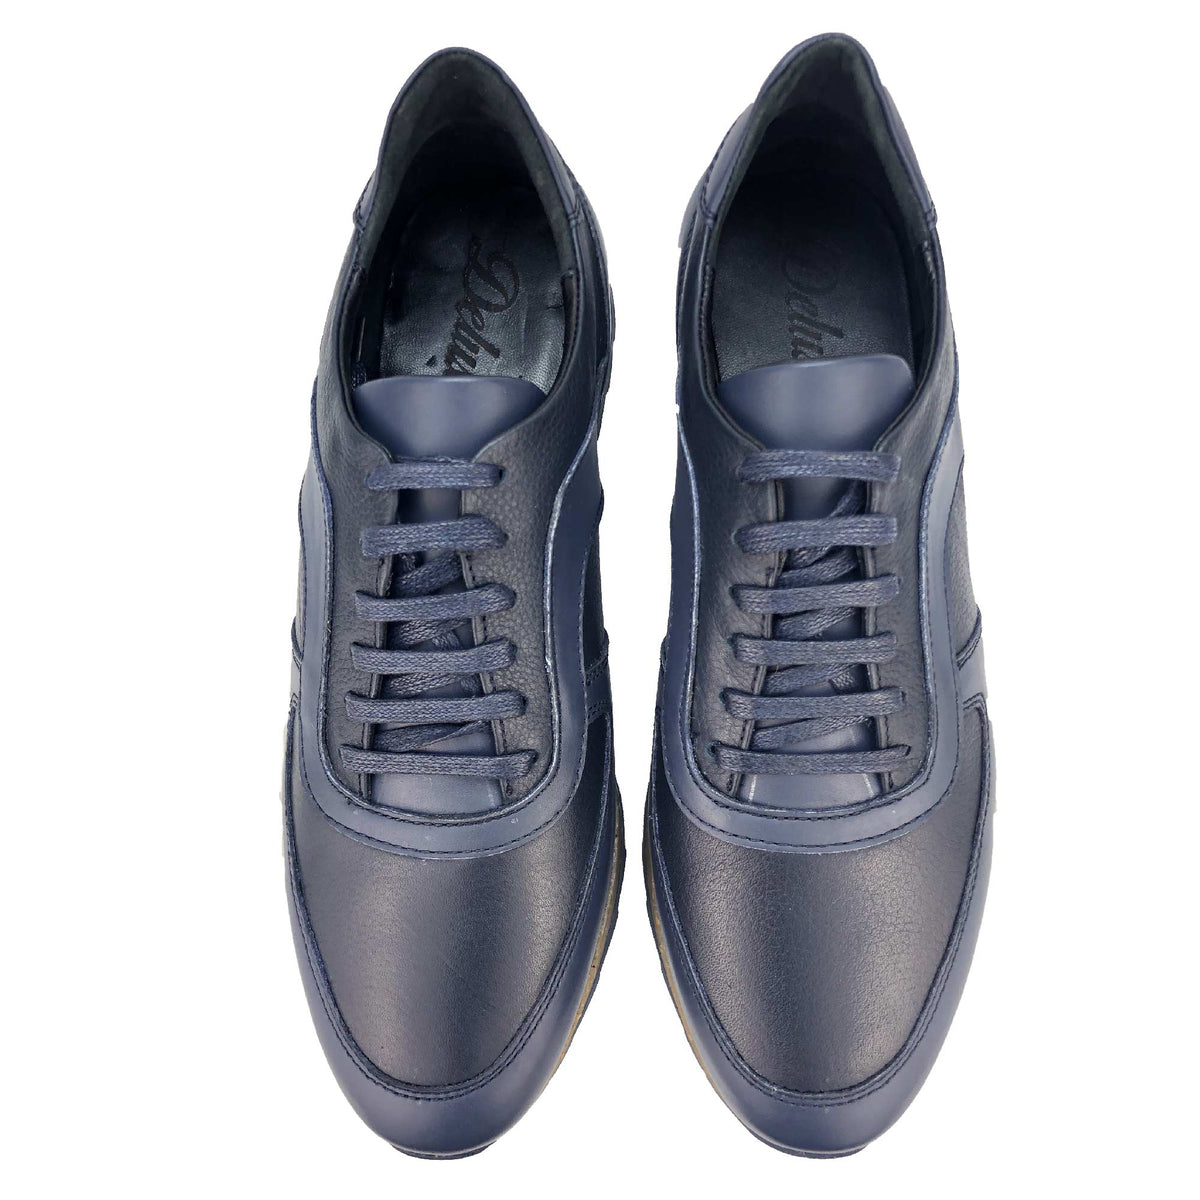 BSK423-015 - Chaussure cuir BLEU - deluxe-maroc